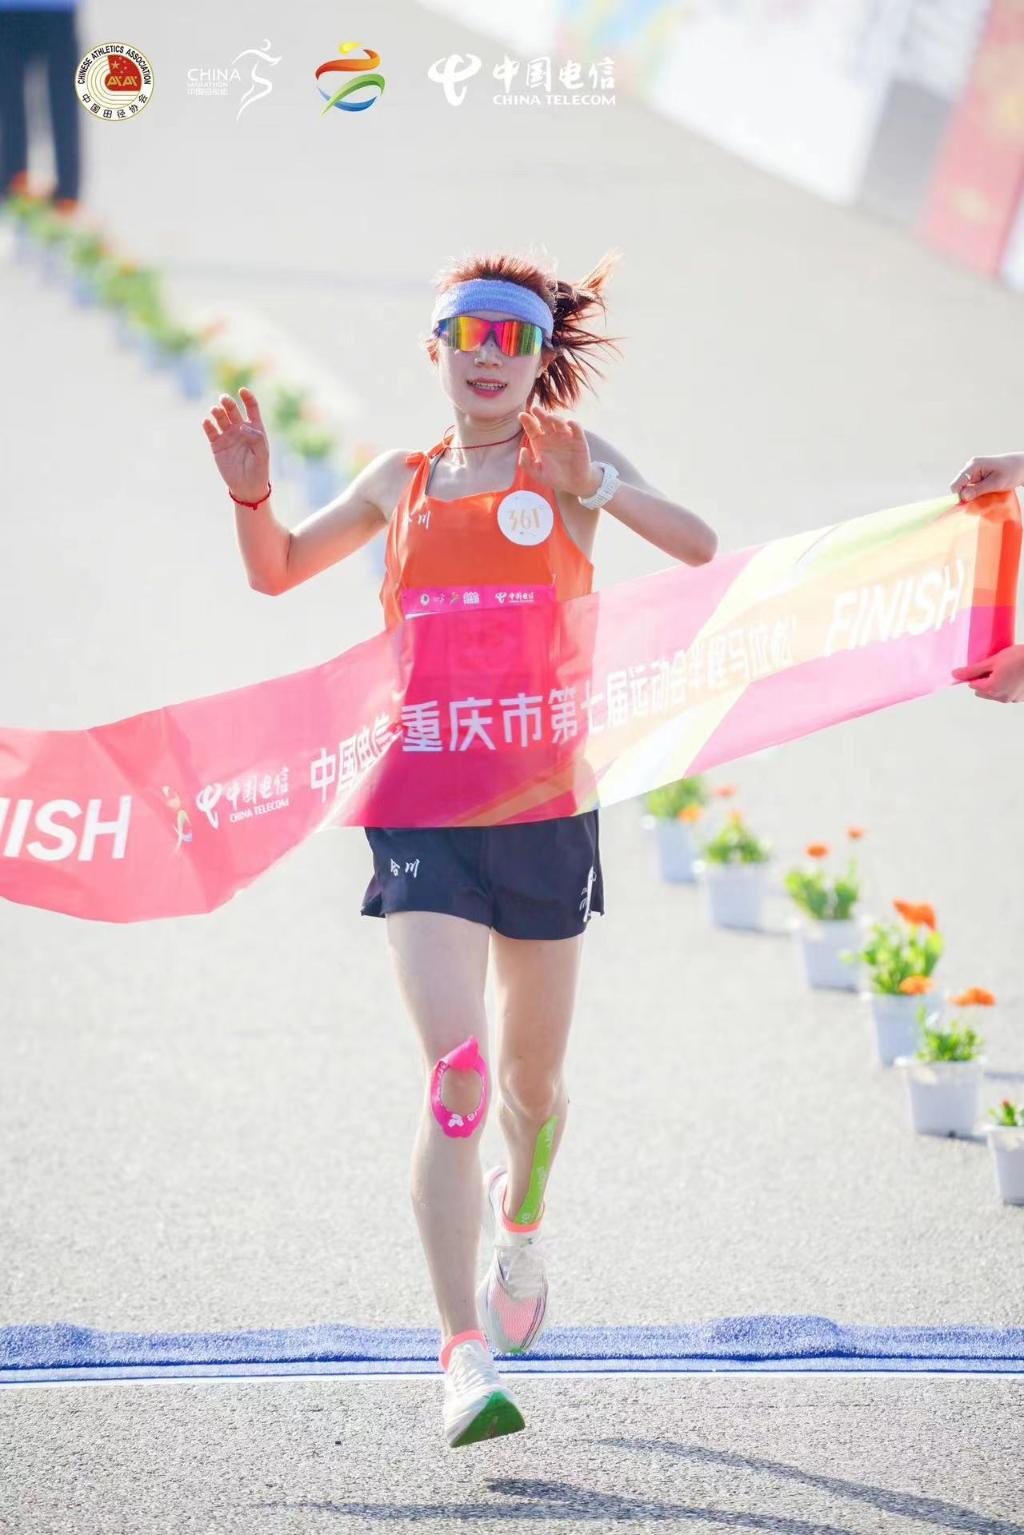 合川代表队选手冯丹以1小时17分40秒的成绩斩获市运会半程马拉松女子冠军。 合川区委宣传部供图